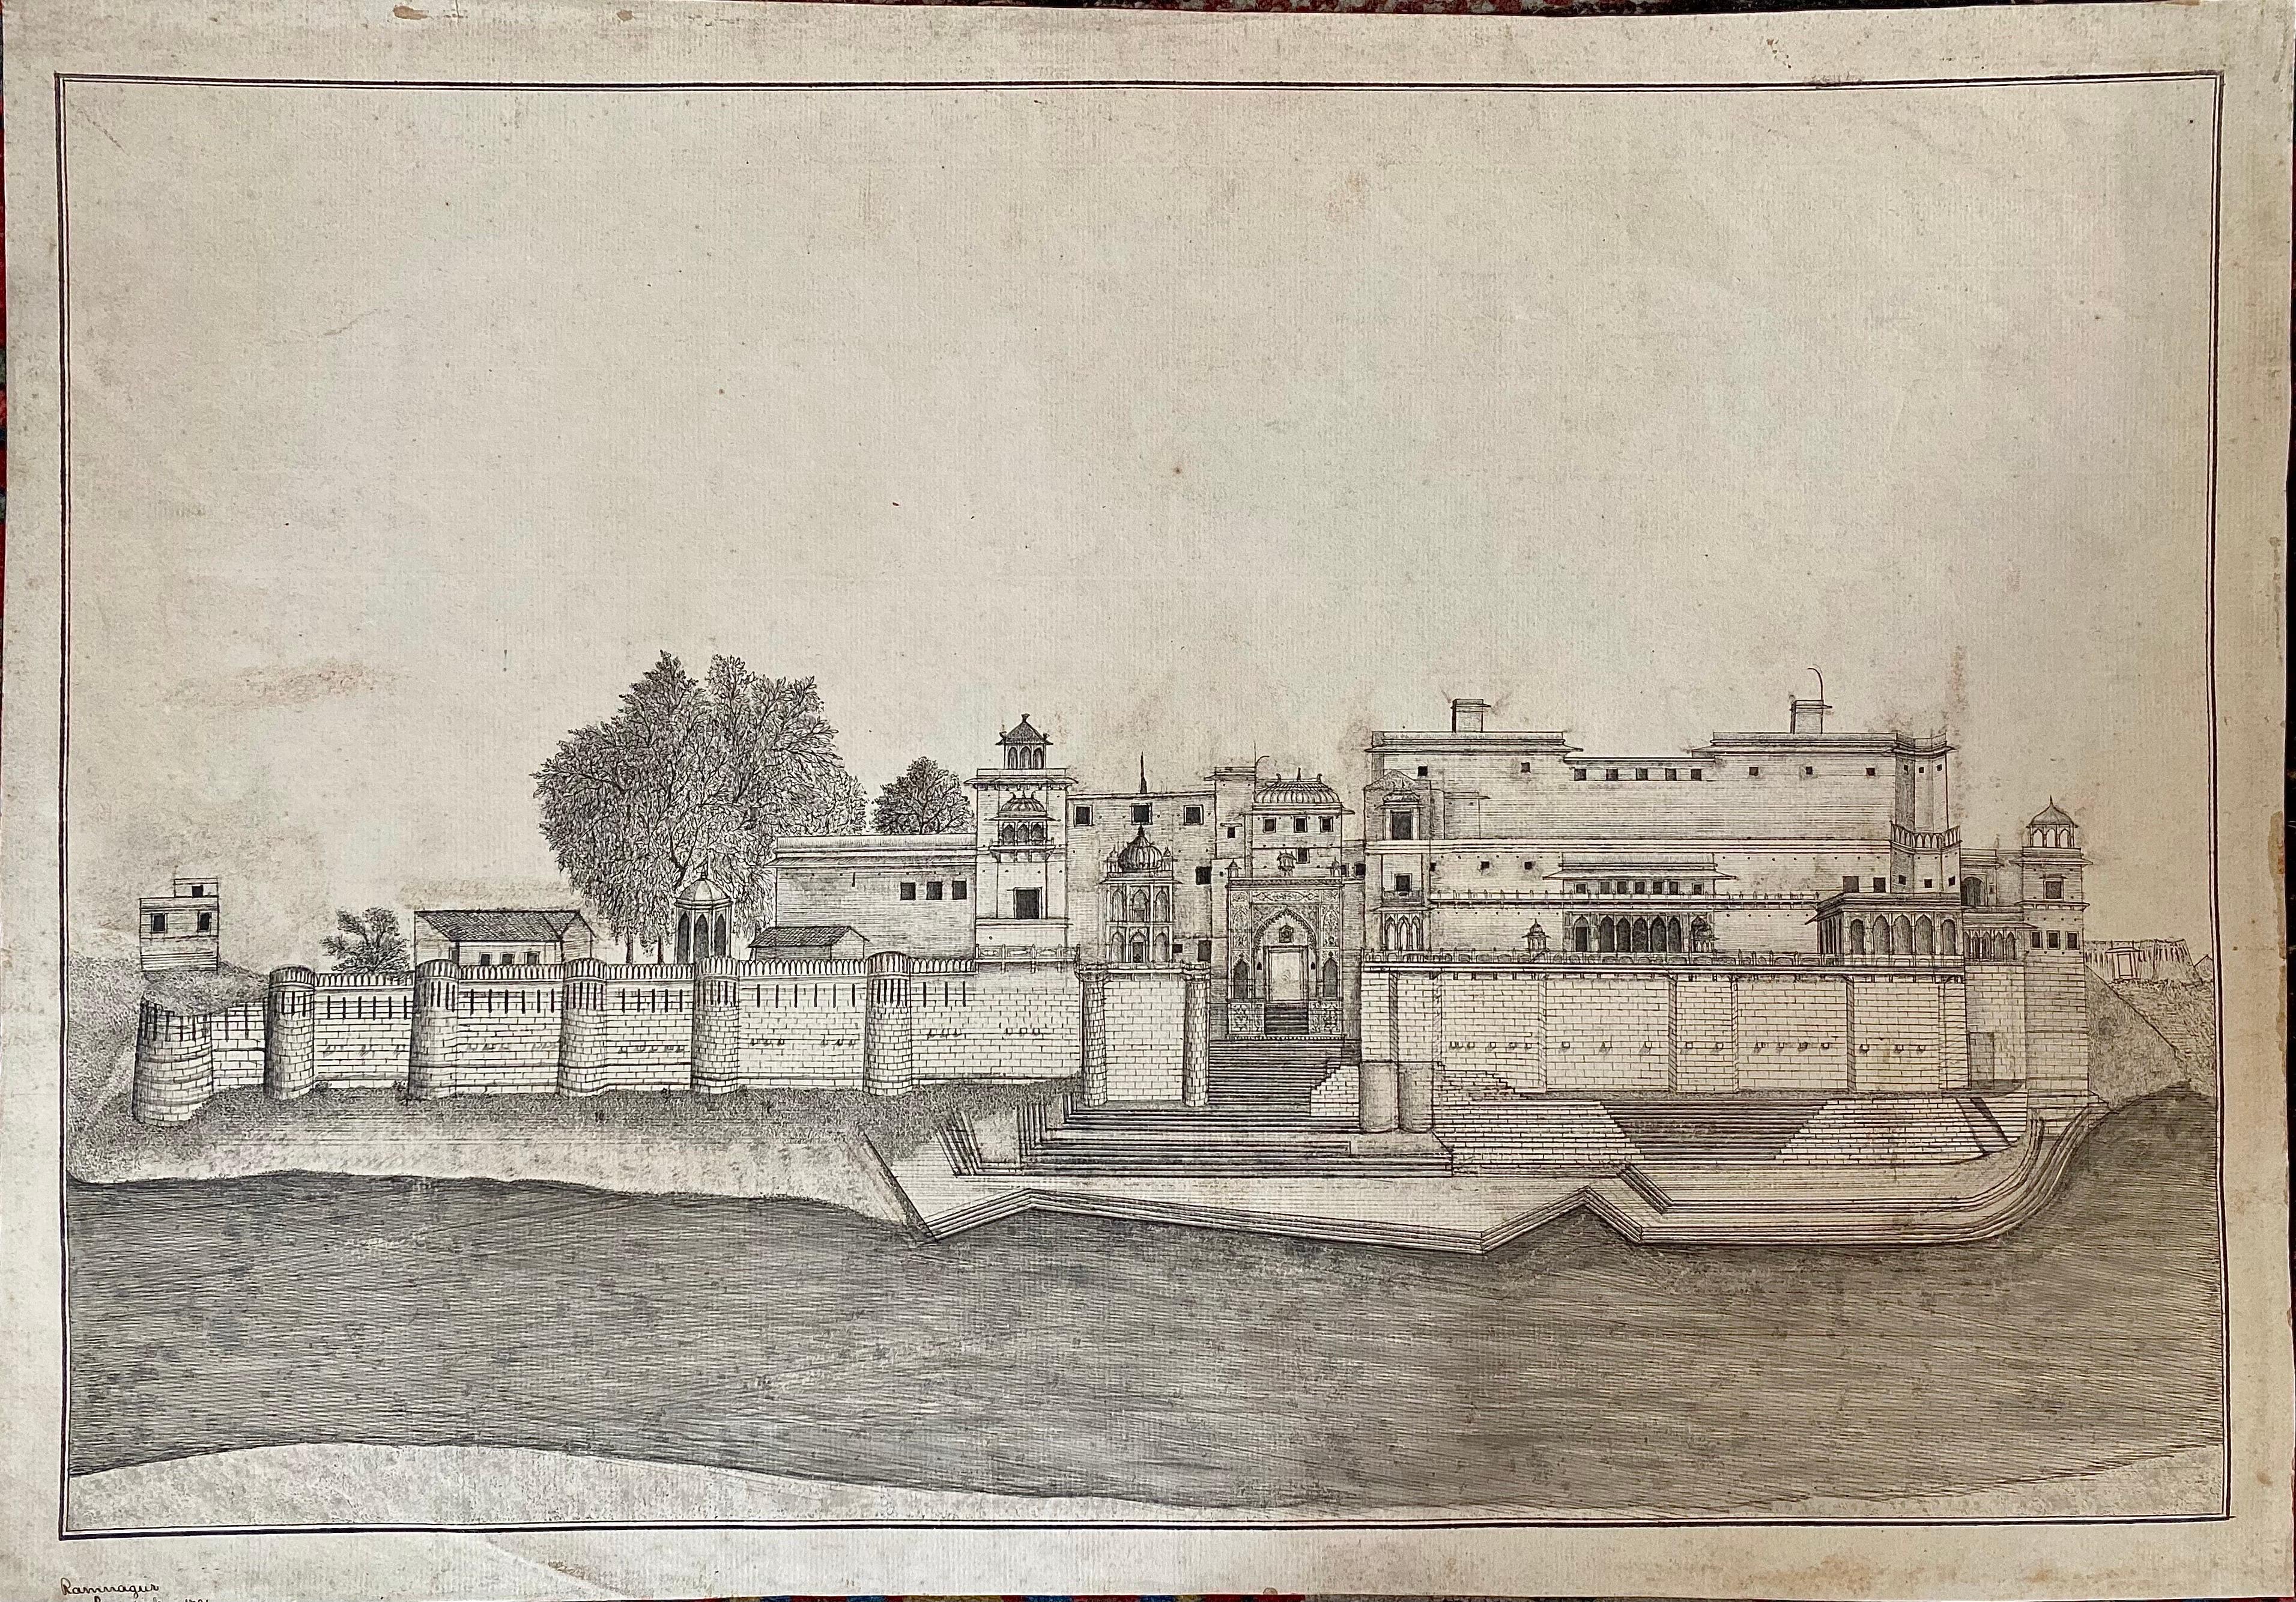 Unknown Landscape Art – Ramnagar Fort, Indien, Company School, Bleistift und Tinte, spätes 18. Jahrhundert